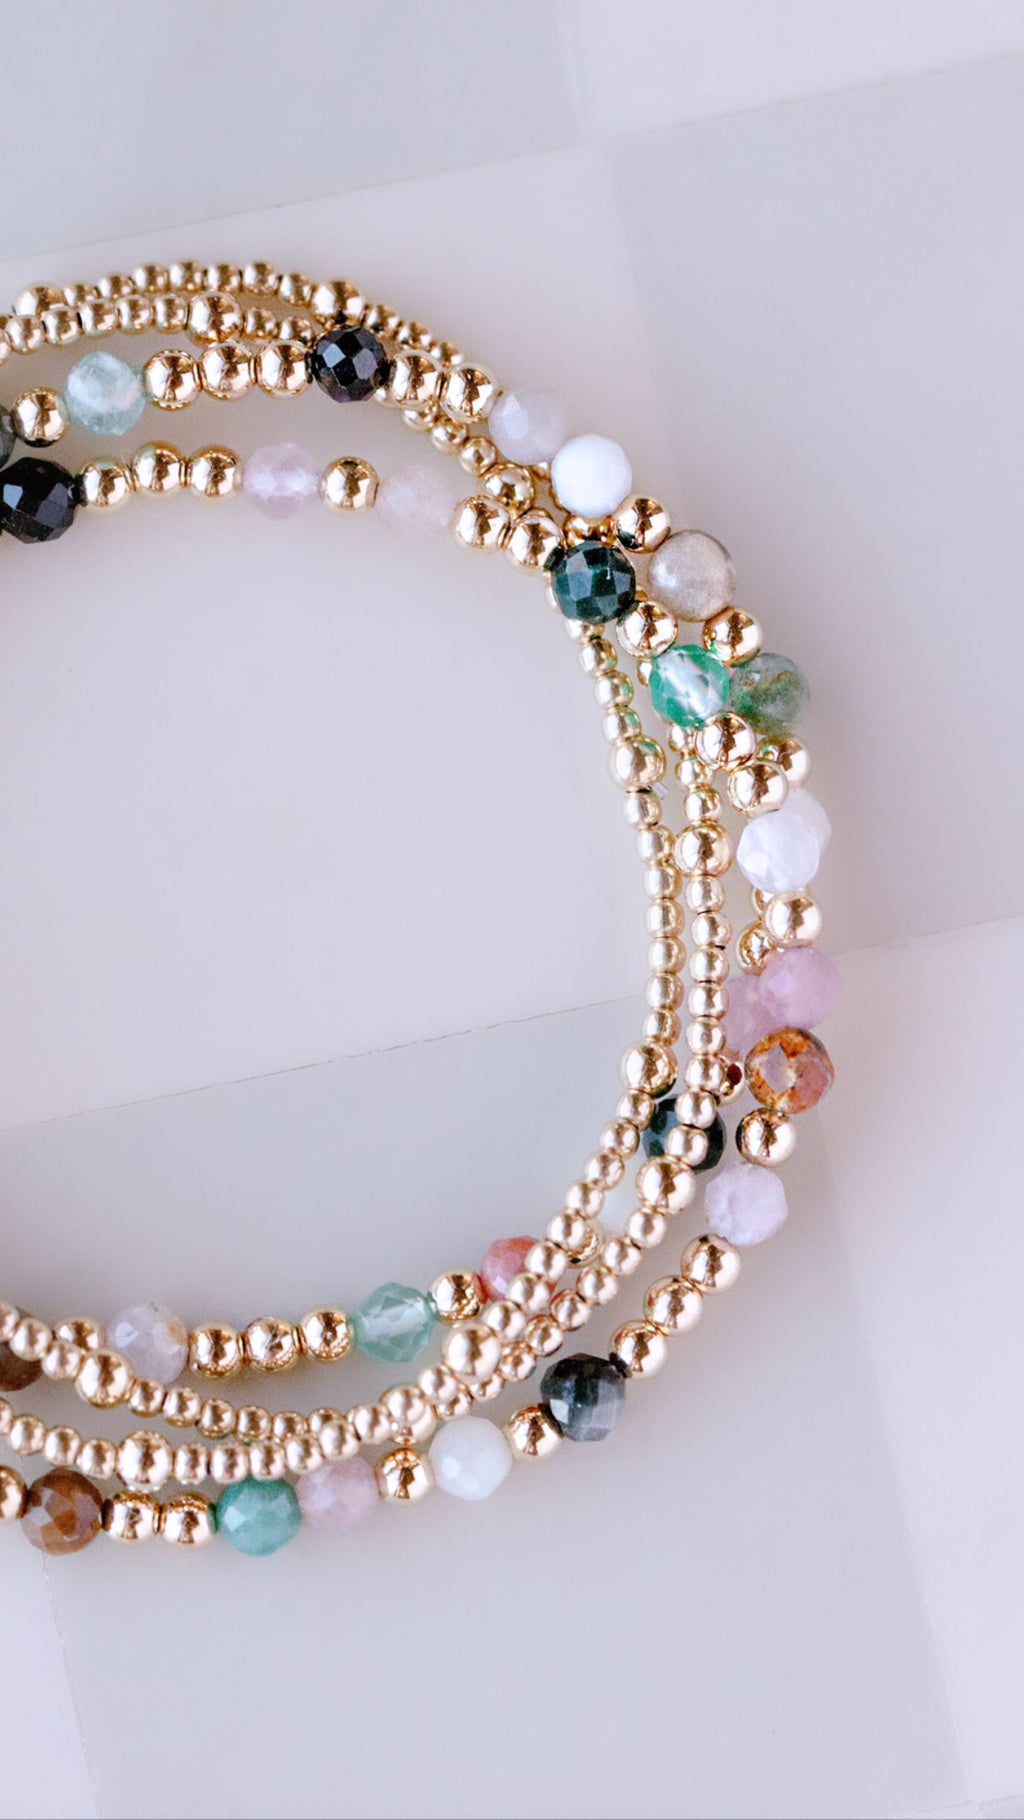 The Bejeweled Bracelet - The Neon Cactus Studio